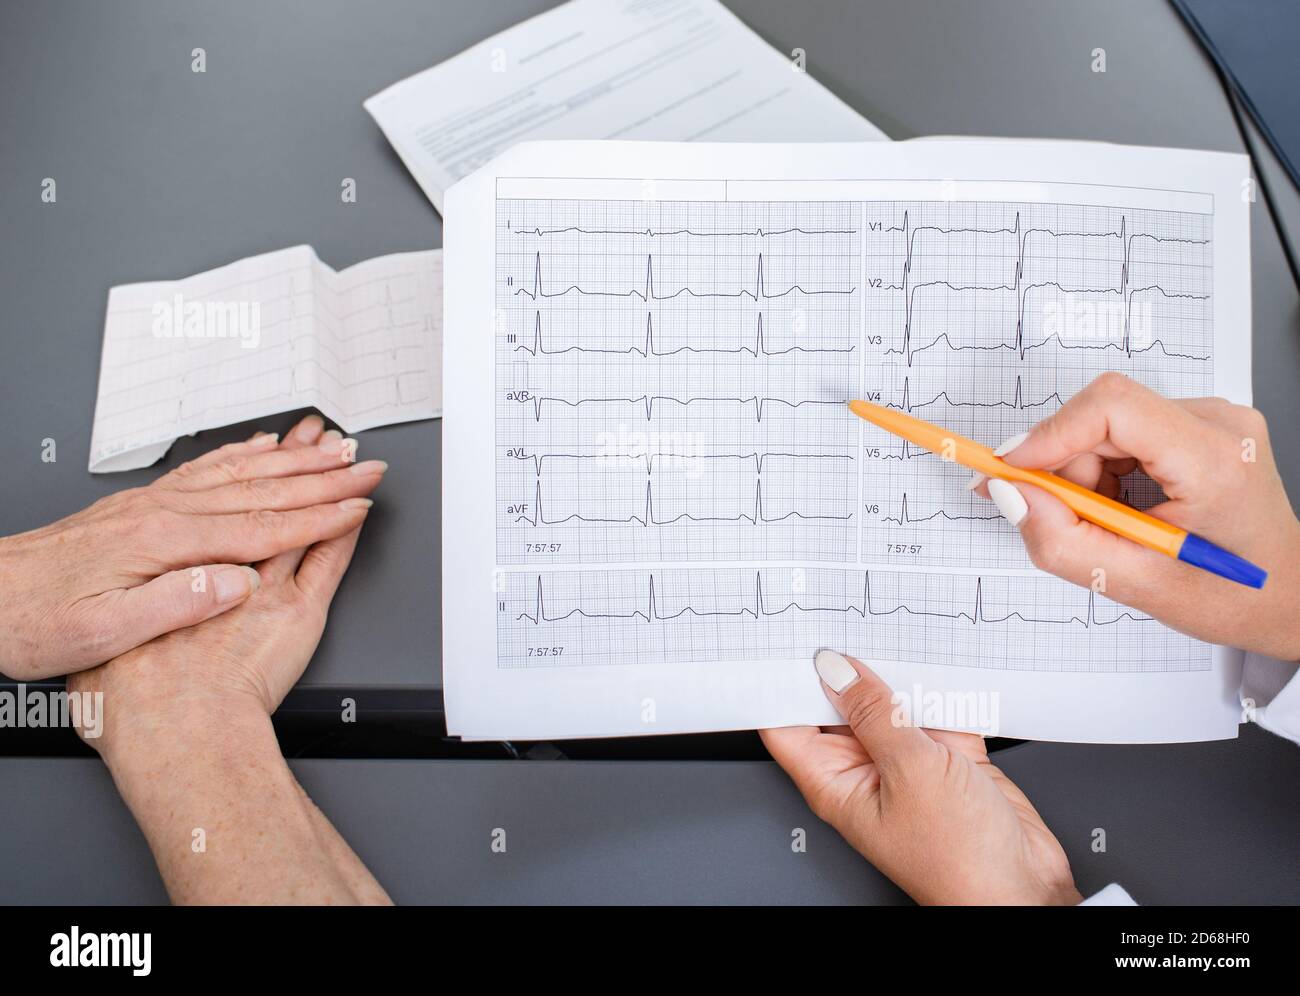 Medico esperto che detiene i risultati dell'elettrocardiogramma di una donna anziana. Diagnosi e trattamento di aritmie, cardiopatia coronarica e cuore f Foto Stock